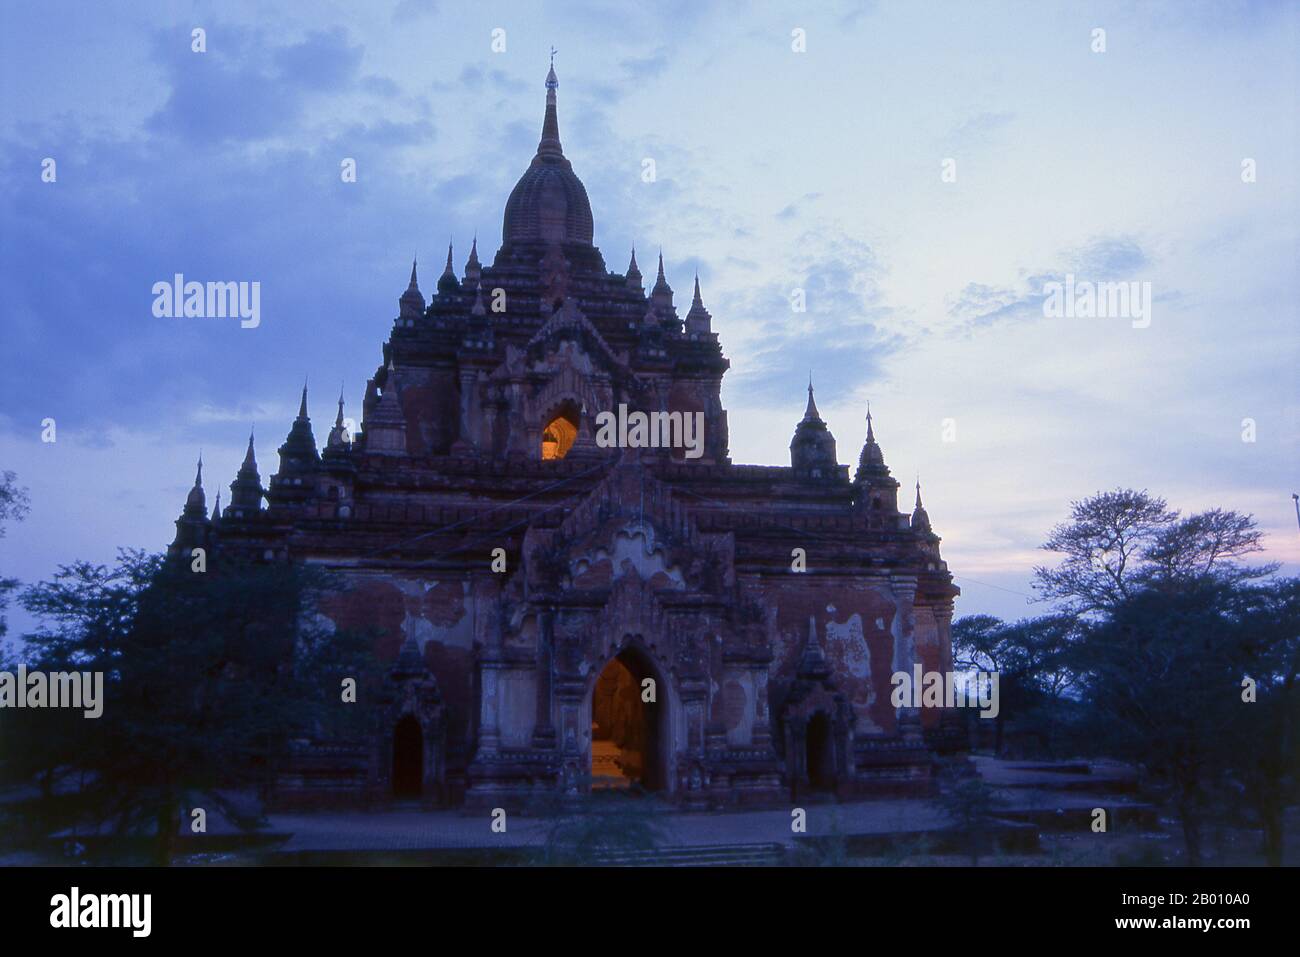 Birmania: Tempio di Htilominlo, Bagan (Pagana) Città Antica. Il Tempio di Htilominlo fu costruito durante il regno di re Htilominlo (noto anche come Nandaungmya) nel 1211. Bagan, ex Pagan, è stato costruito principalmente tra il 11 ° secolo e 13 ° secolo. Formalmente chiamato Arimaddanapura o Arimaddana (la città del Crusher Enemy) e conosciuto anche come Tambadipa (la terra del rame) o Tassadessa (la terra dei cortei), era la capitale di diversi regni antichi in Birmania. Foto Stock